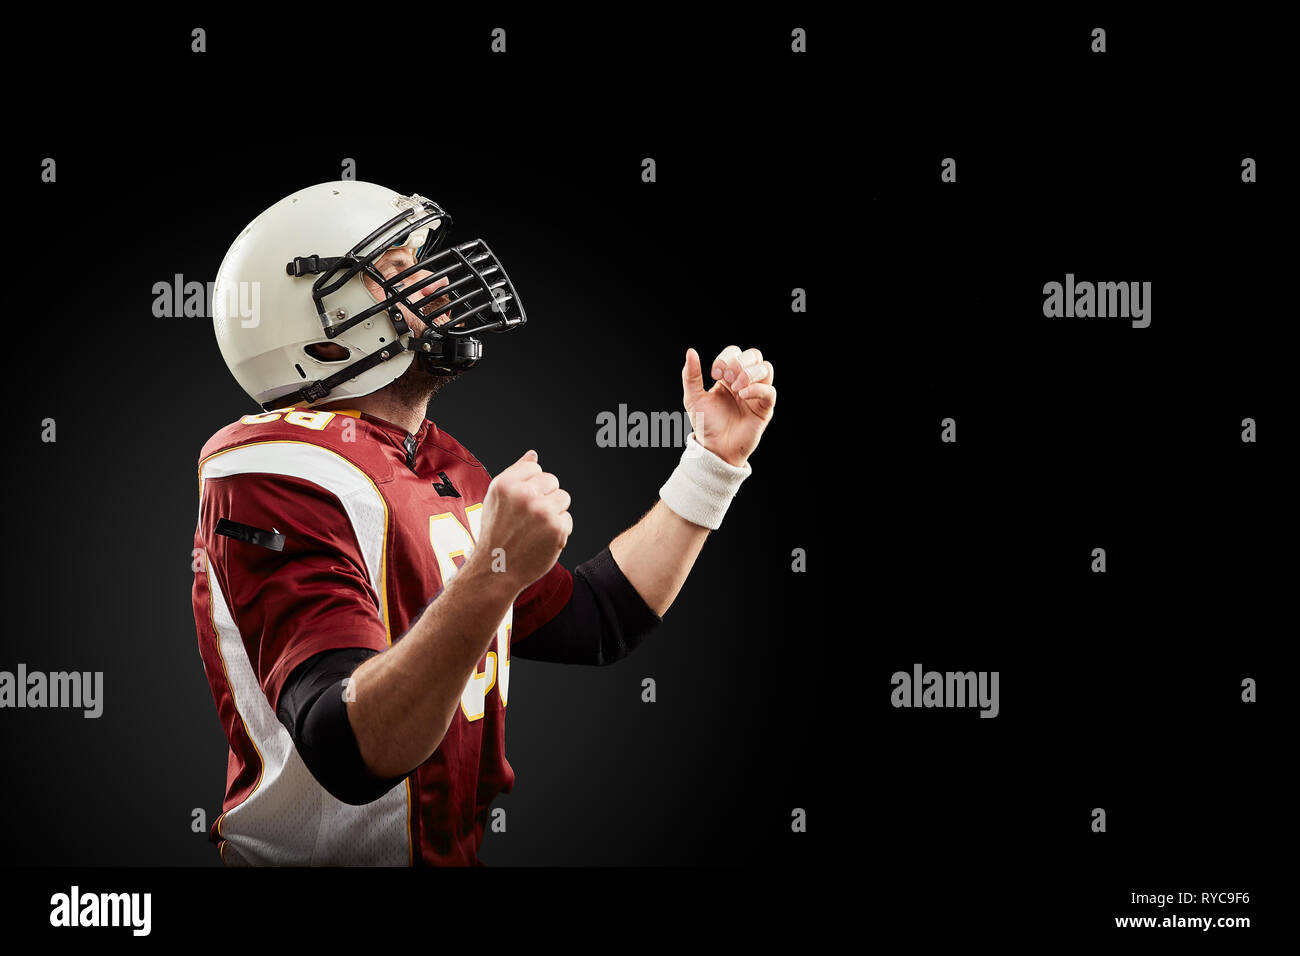 Isolierte American Football Spieler freut sich über Sieg in schwarzer Hintergrund Stockfoto